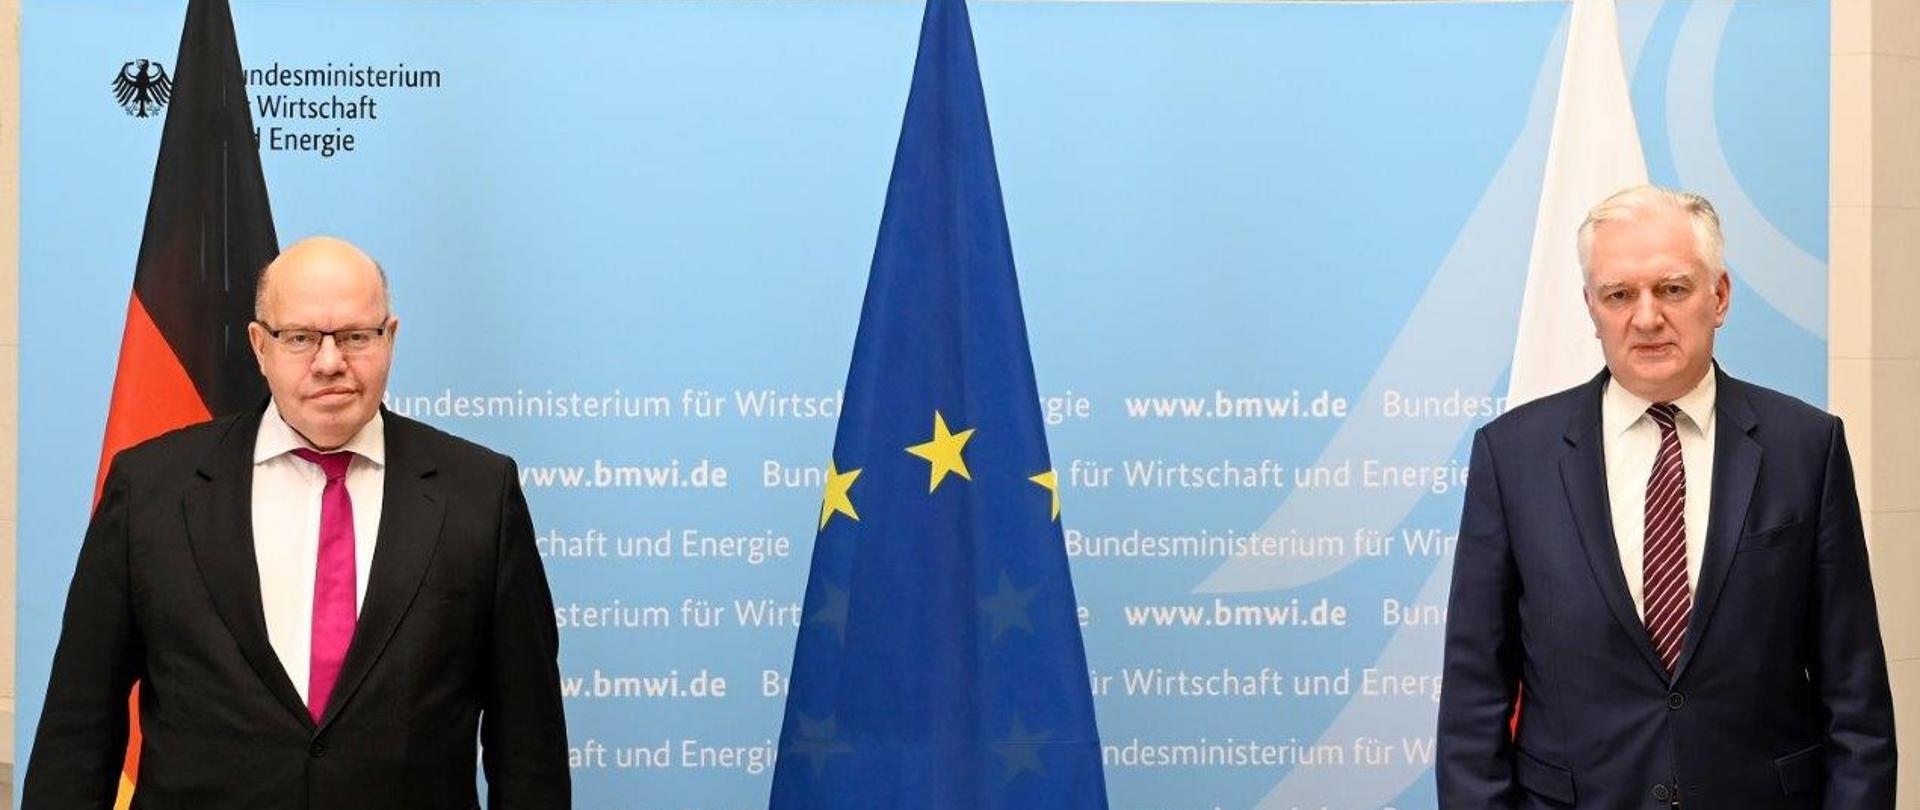 Na zdjęciu widzimy wicepremiera J. Gowina i Federalnego Ministra Gospodarki i Energii Petera Altmaiera stojących na tle flag Niemiec i UE